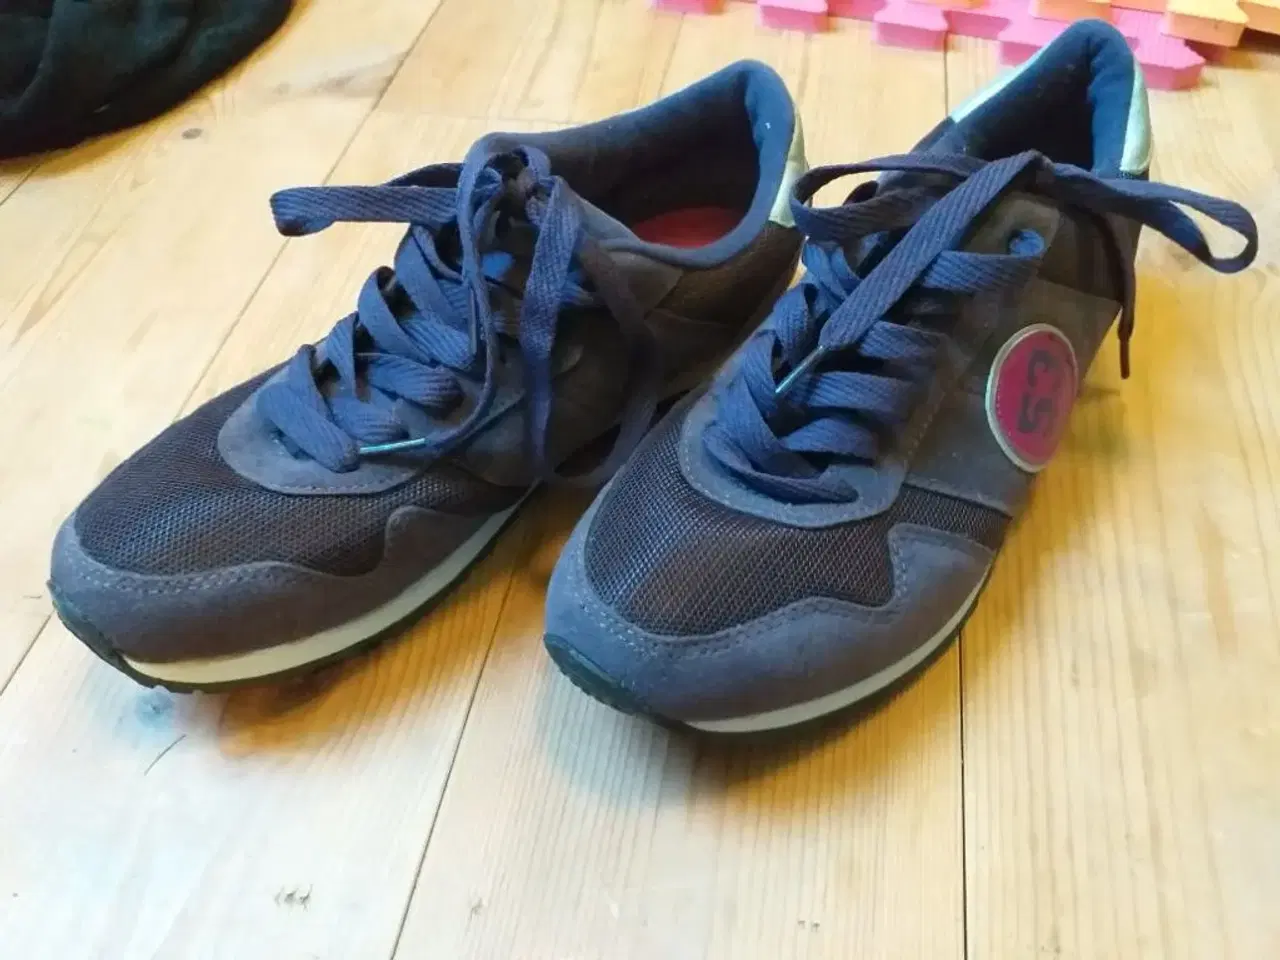 Billede 2 - L) sko og støvler